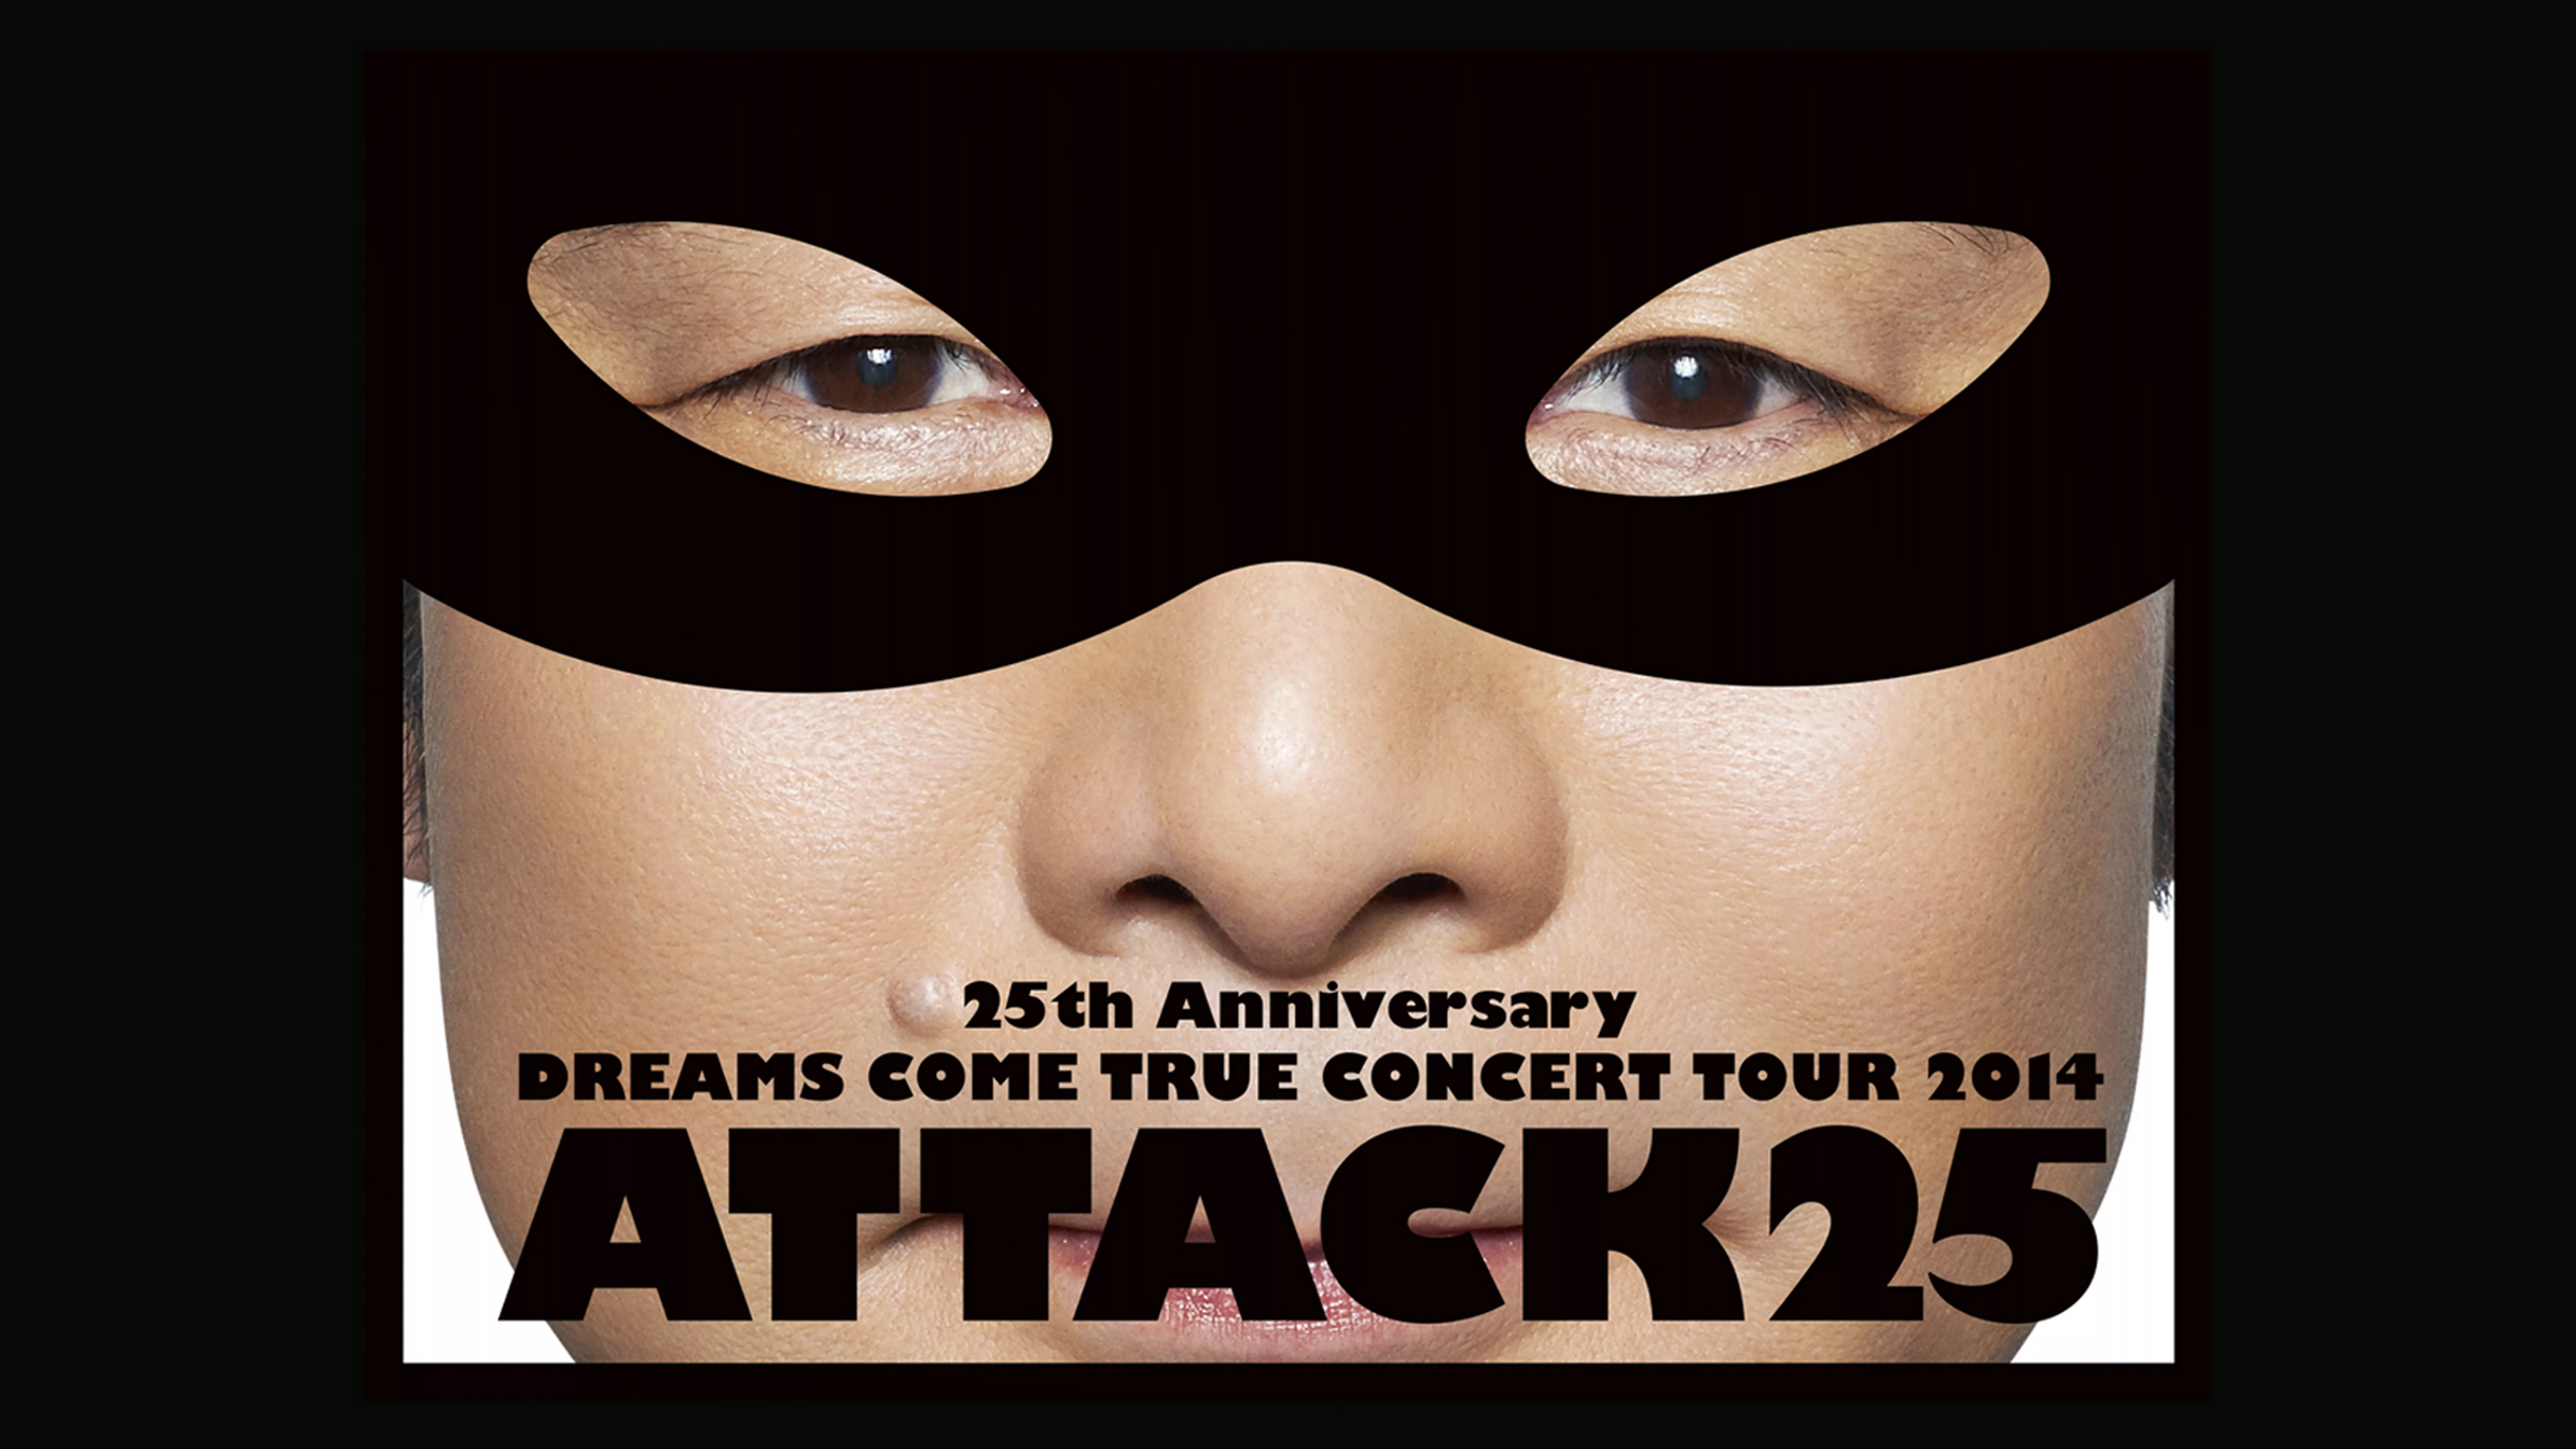 25th Anniversary DREAMS COME TRUE CONCERT TOUR 2014 – ATTACK25 -